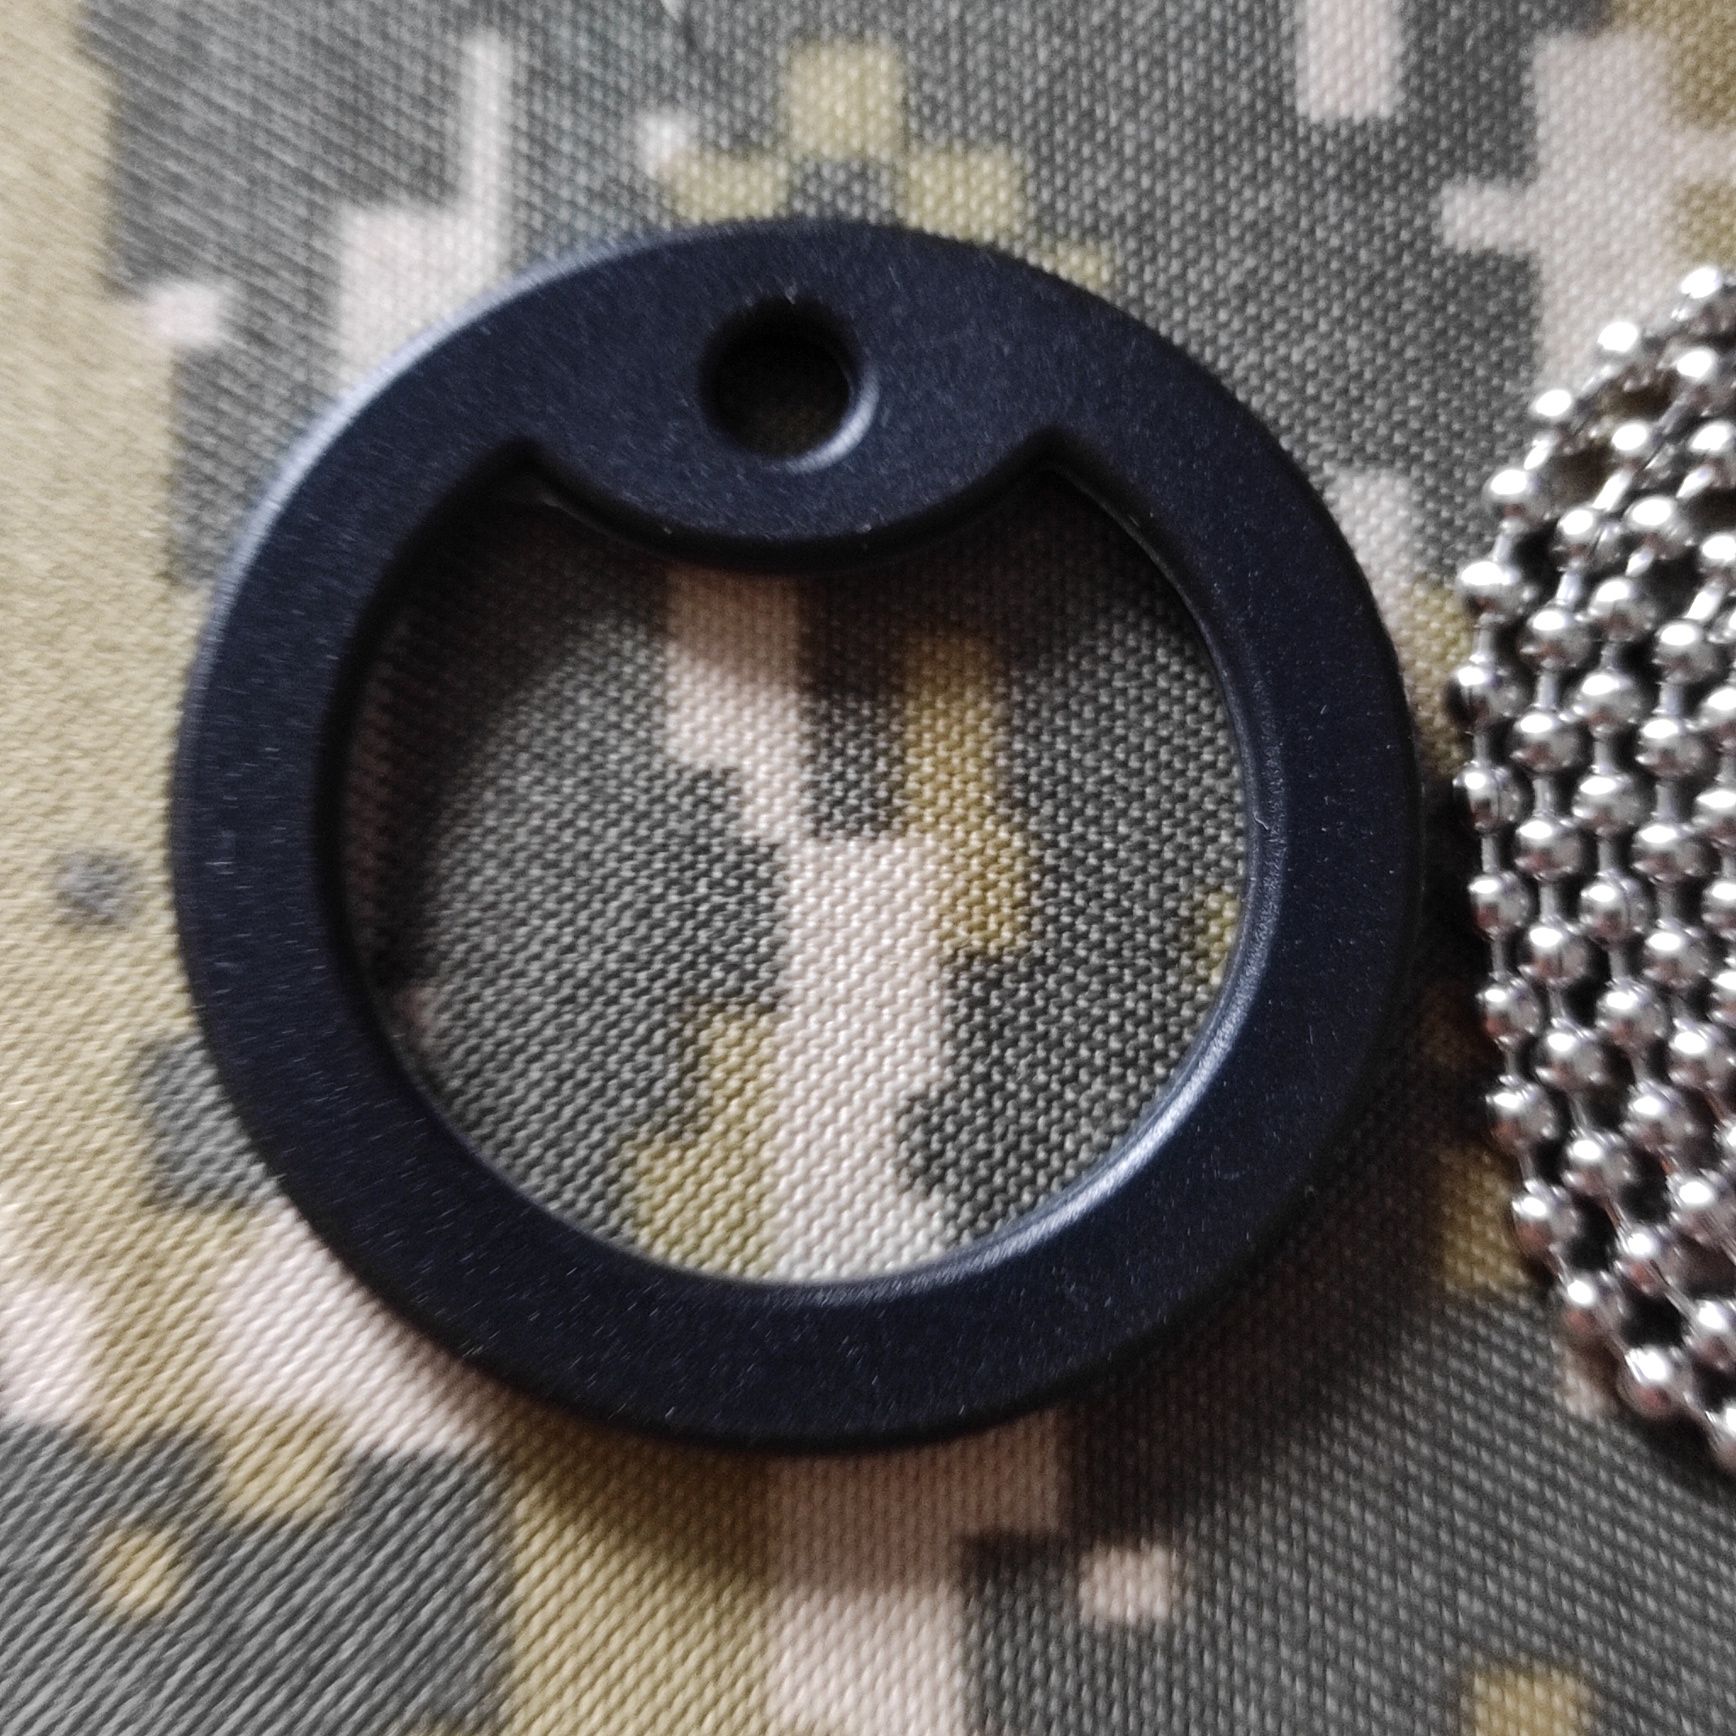 Бампер і ланцюг для НАТОвського армійського жетона.Американка, цепочка